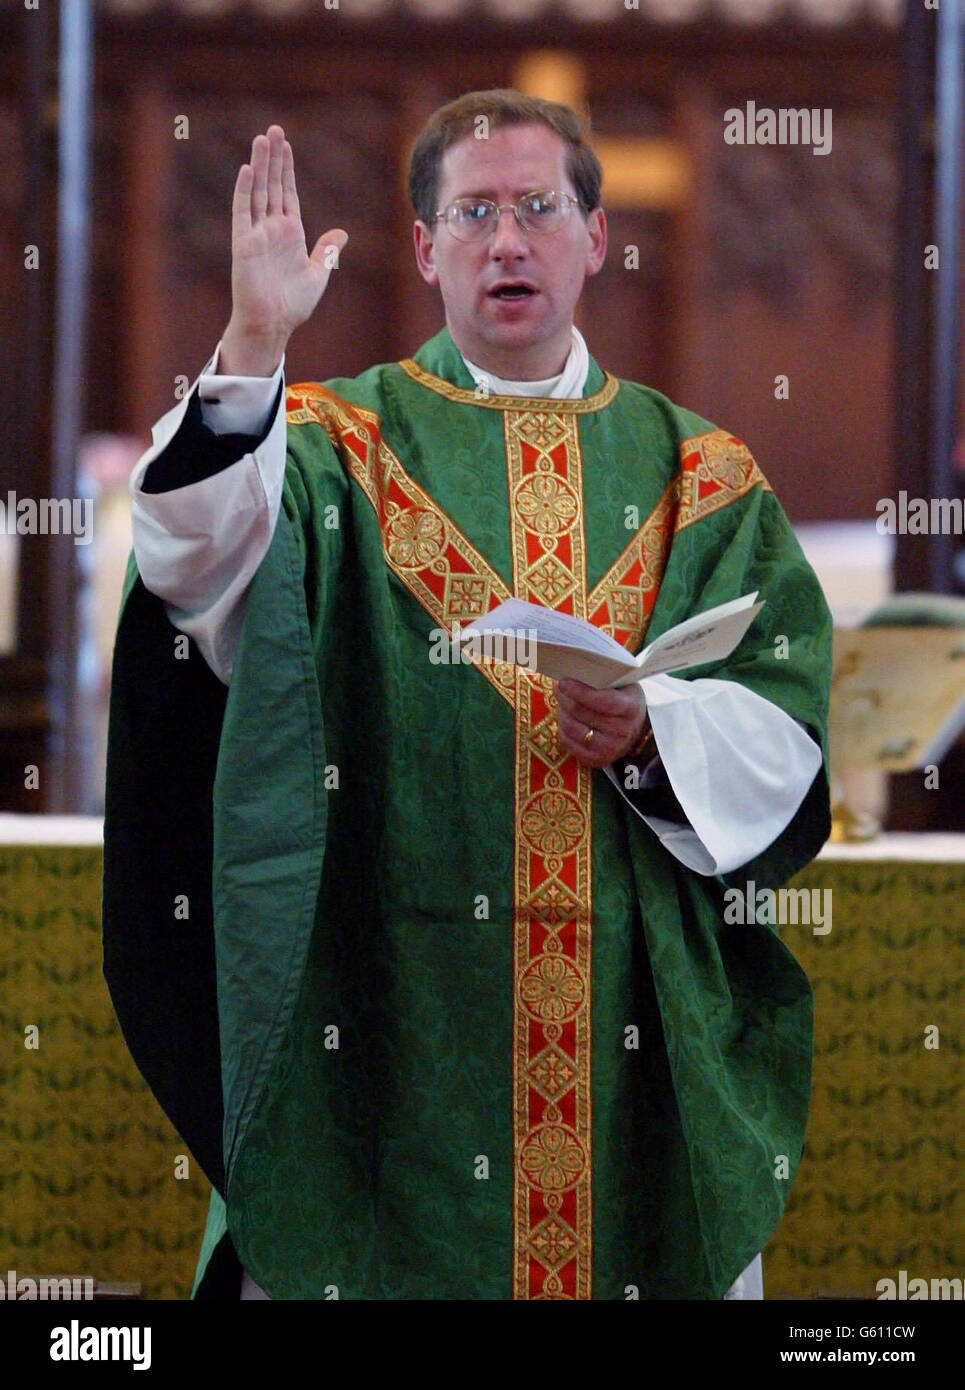 Rev. Tim Alban Jones, der Vikar von Soham, nimmt die wöchentliche Heilige Kommunion in der St. Andrew's Church in Cambridgeshire, nach dem Mord an lokalen Mädchen - Holly Wells und Jessica